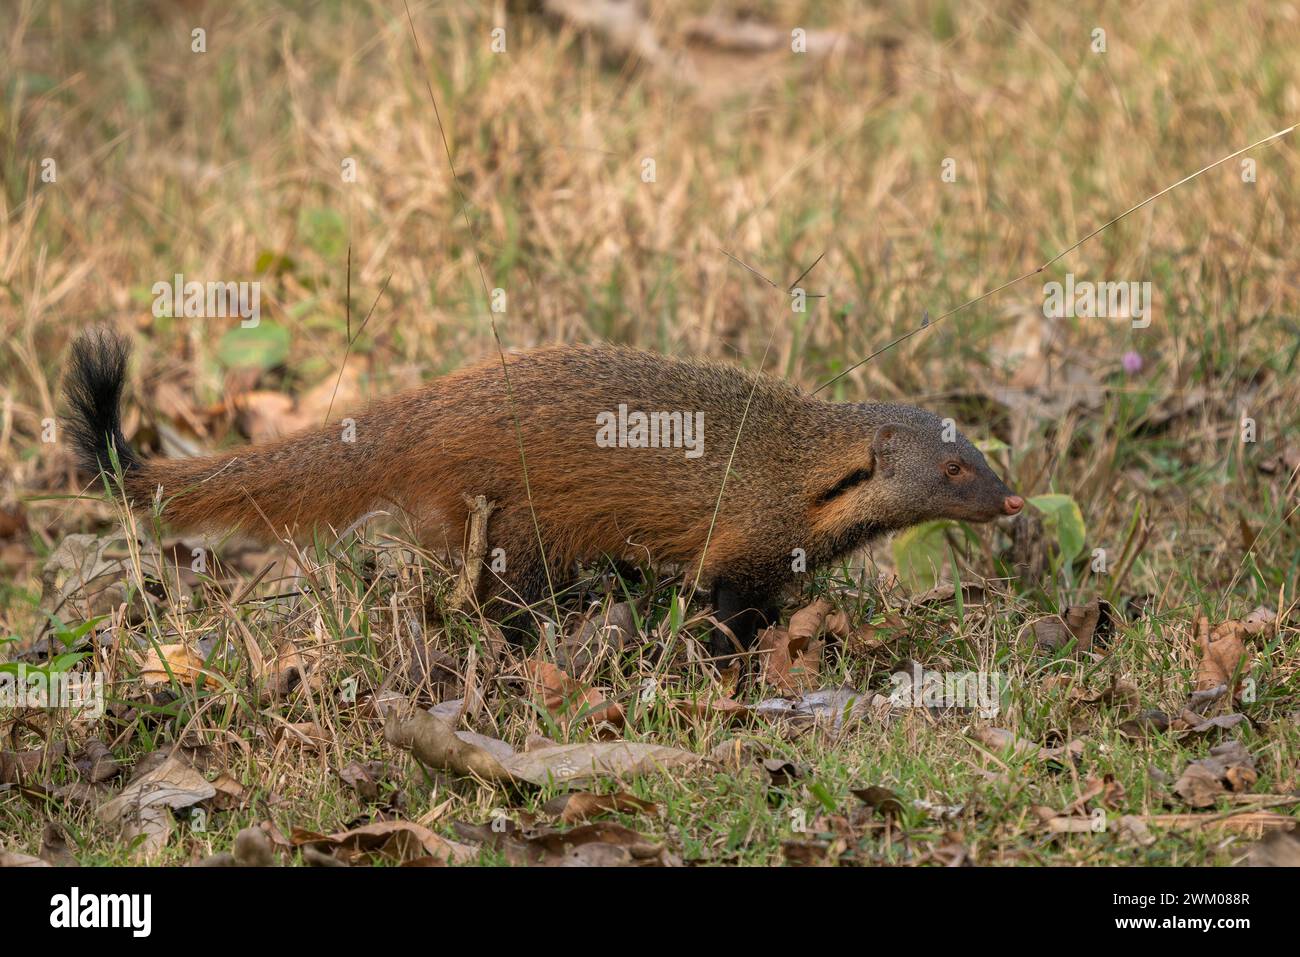 Mongoose à cou rayé - Herpestes vitticollis, belle mangouste timide colorée des forêts et des bois d'Asie du Sud, réserve de tigres de Nagarahole, Indi Banque D'Images